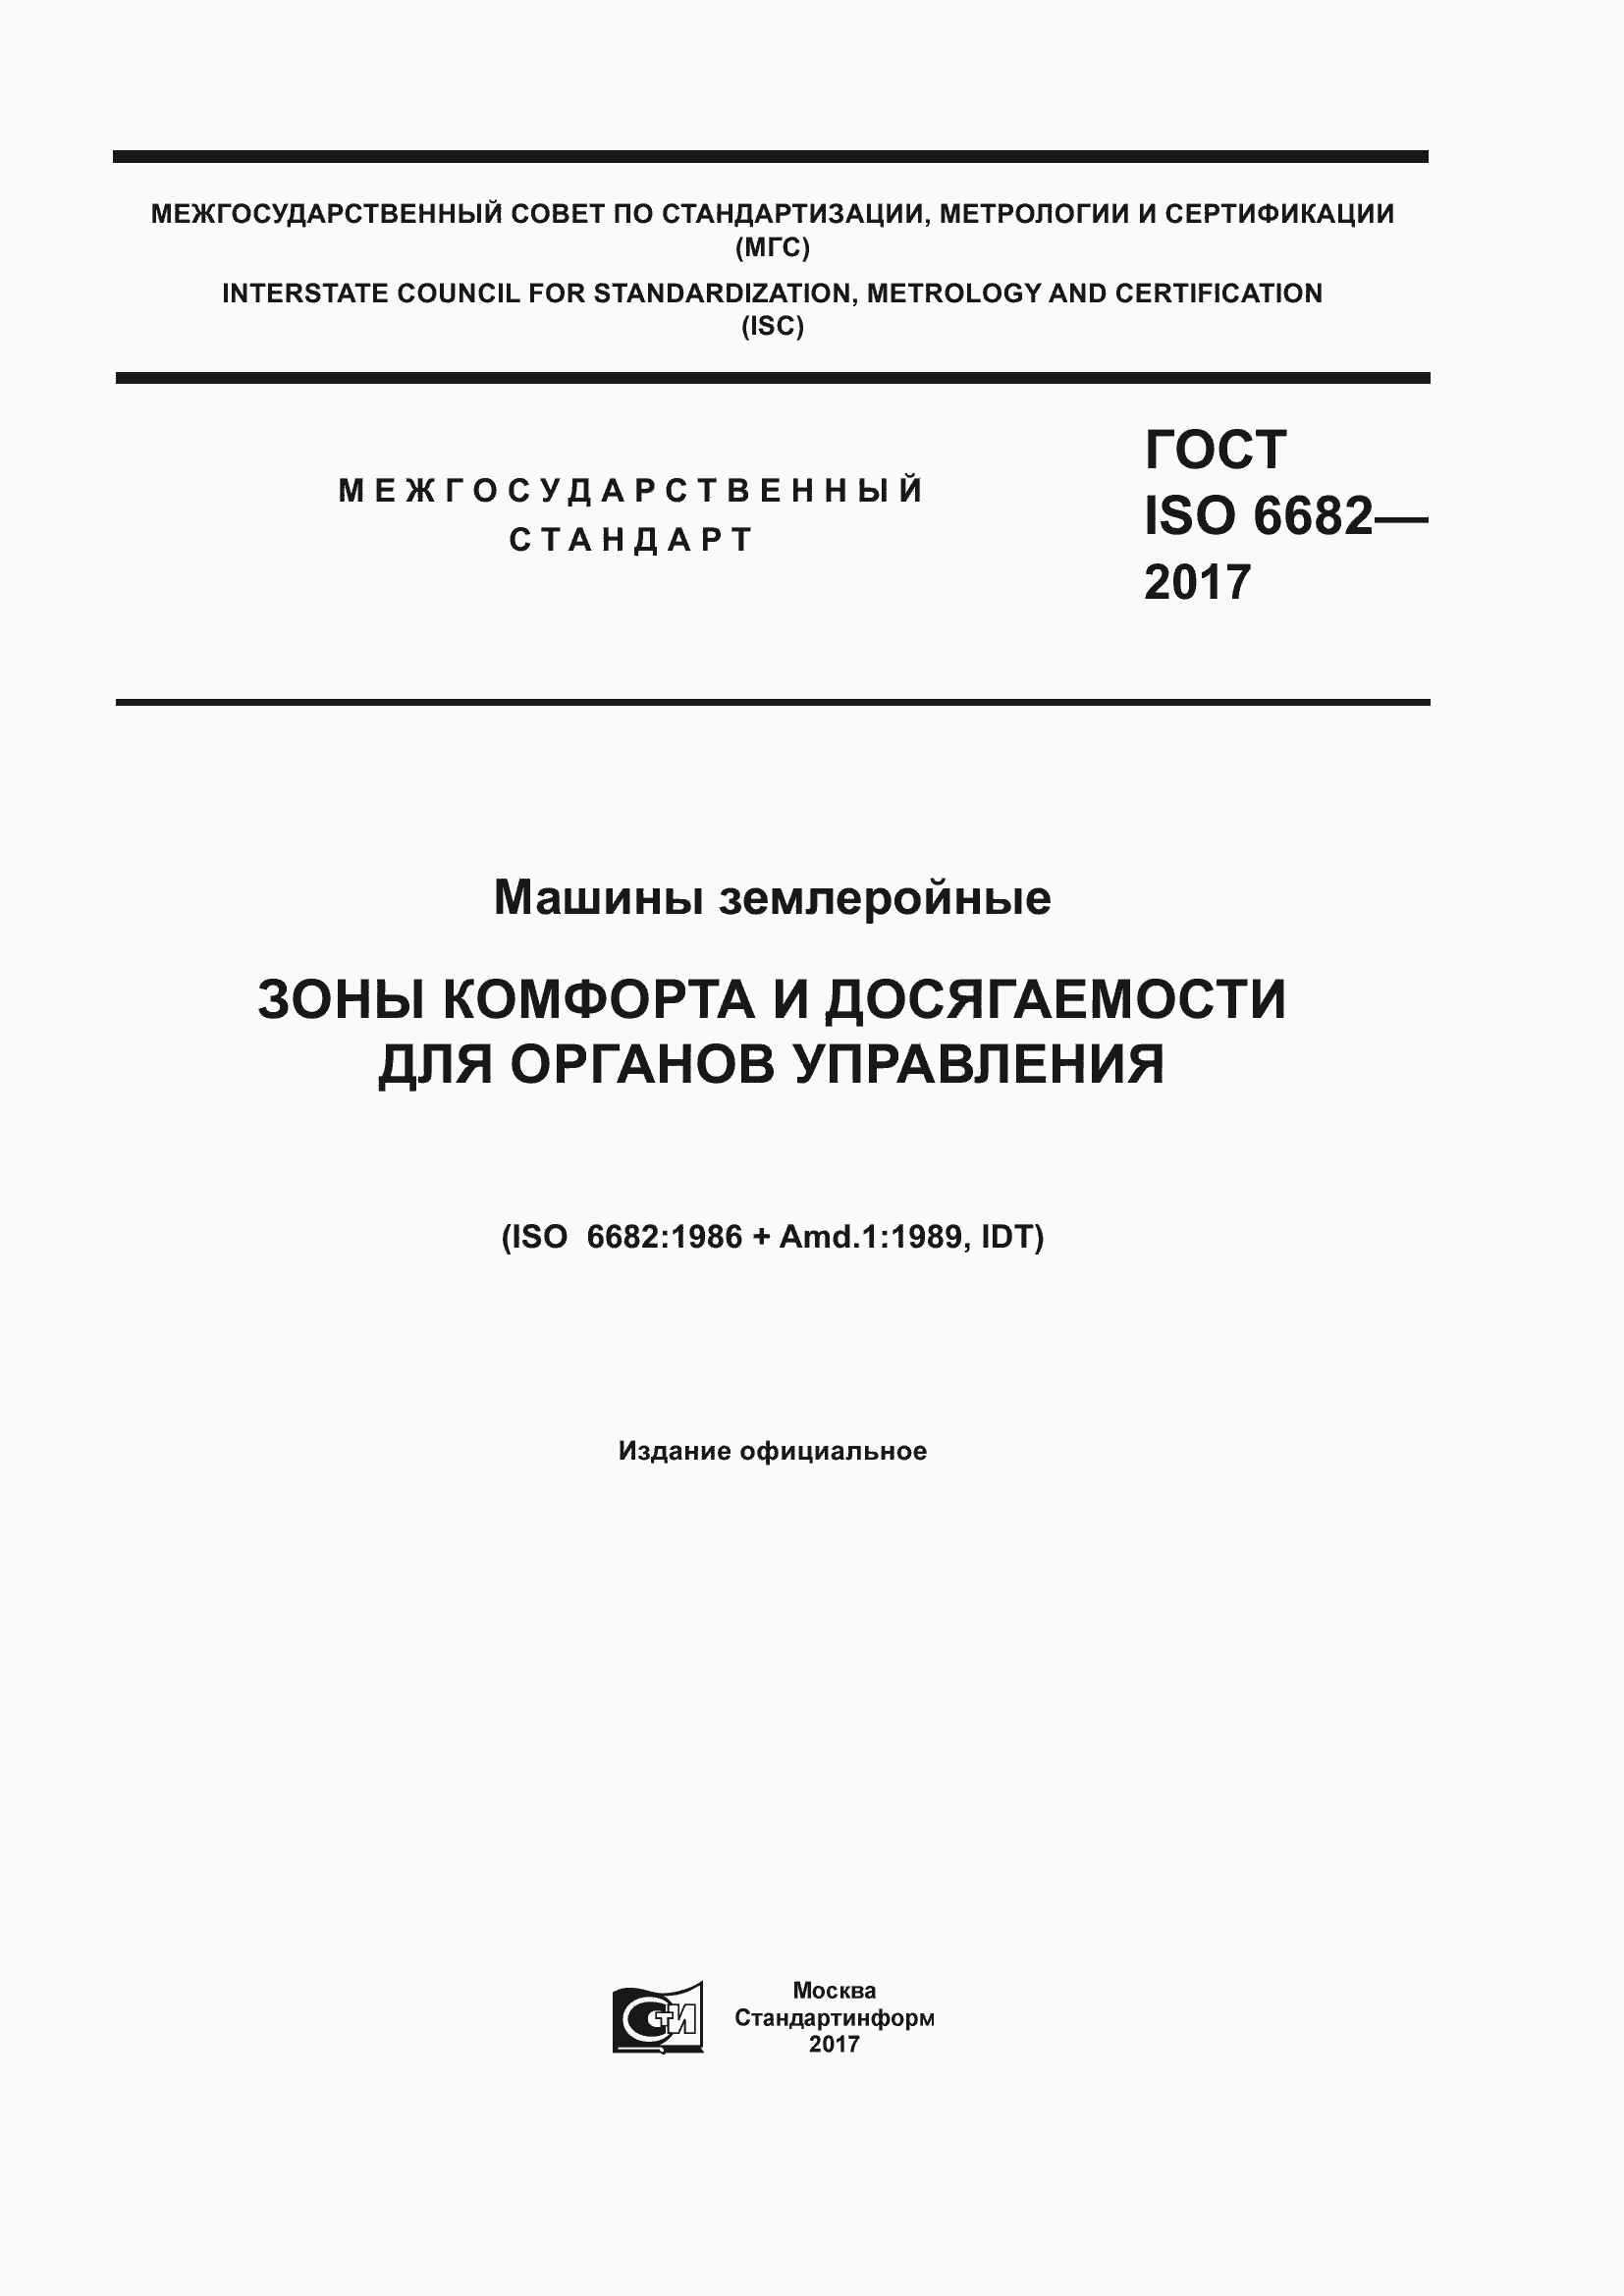 ГОСТ ISO 6682-2017. Страница 1